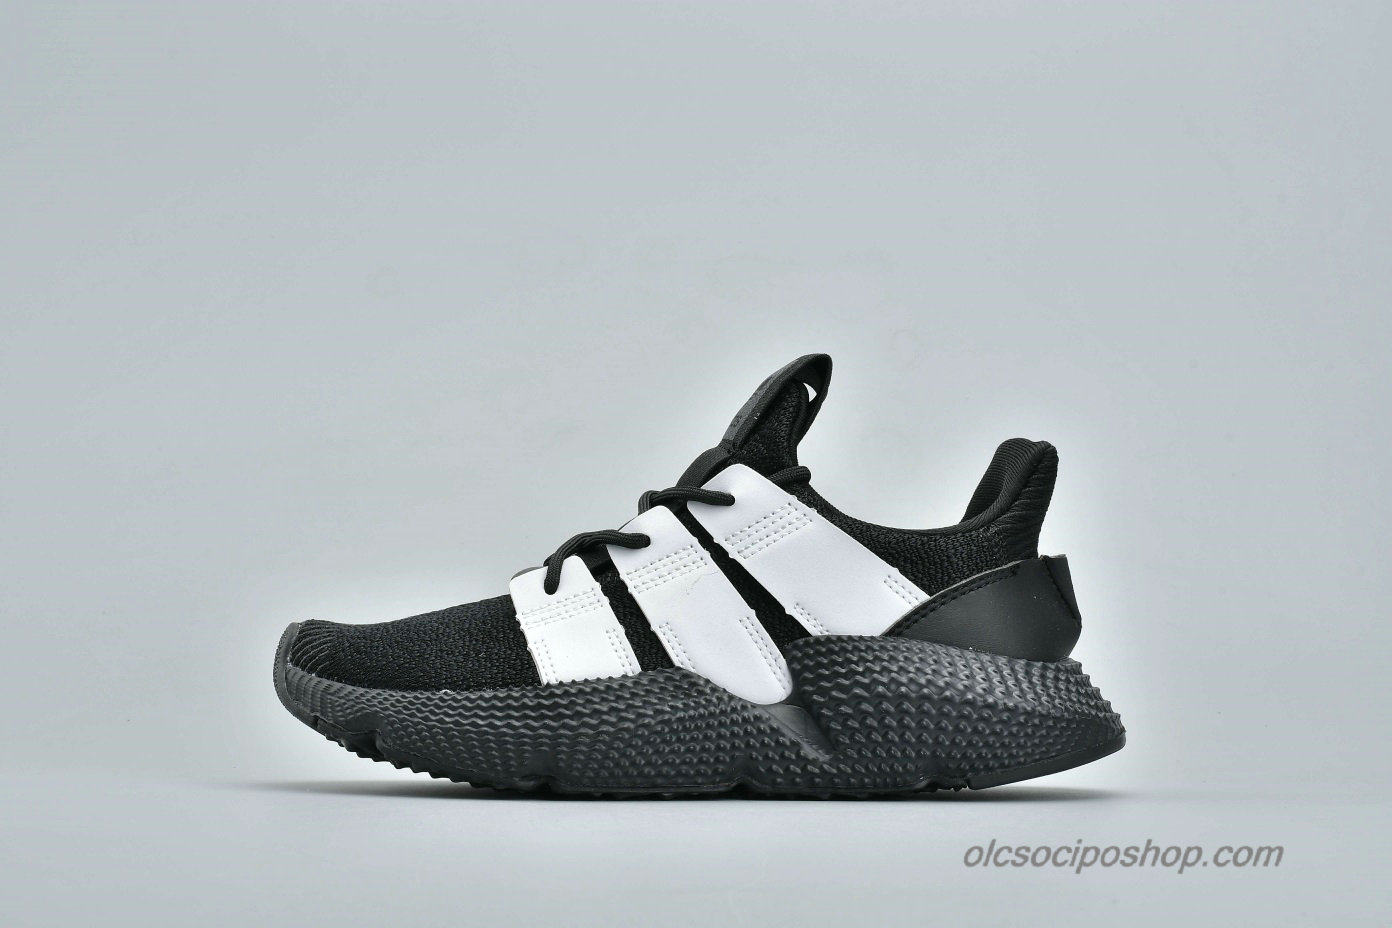 Adidas Prophere Undftd Fekete/Fehér Cipők (B37462) - Kattintásra bezárul